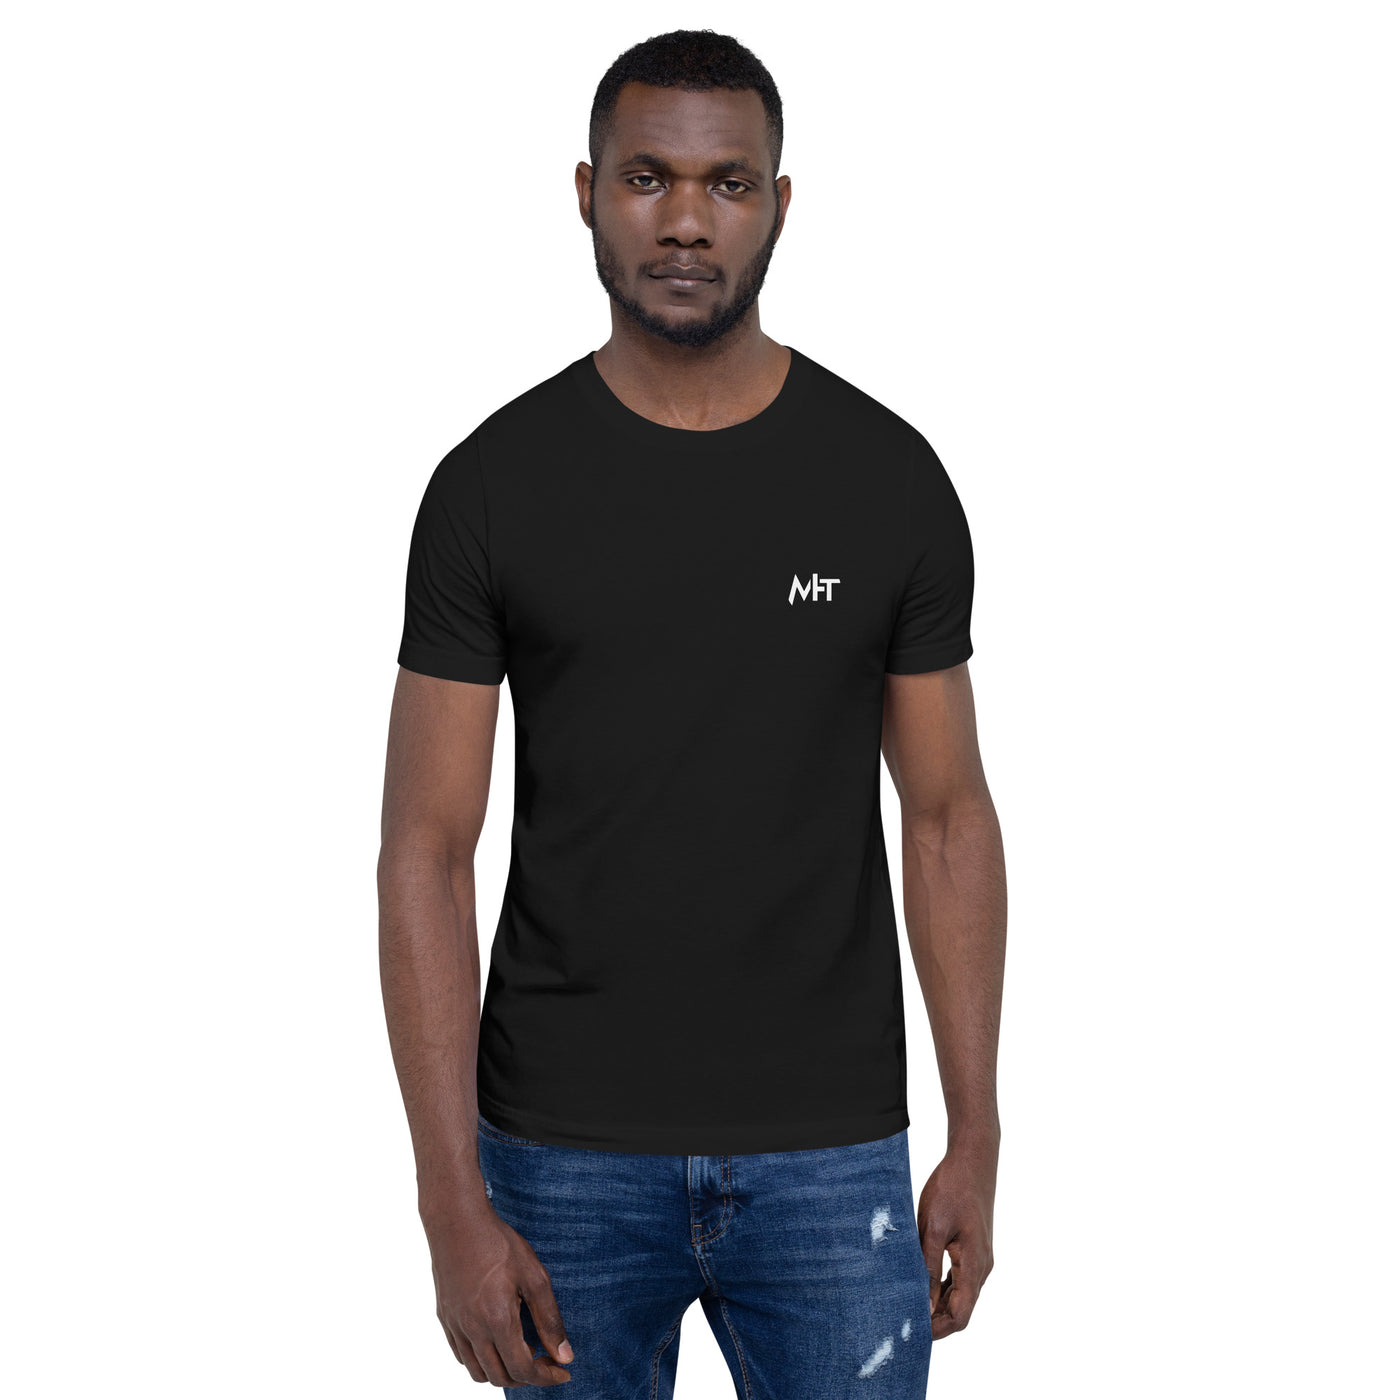 Don't click on sh*t  - Unisex t-shirt (back print)